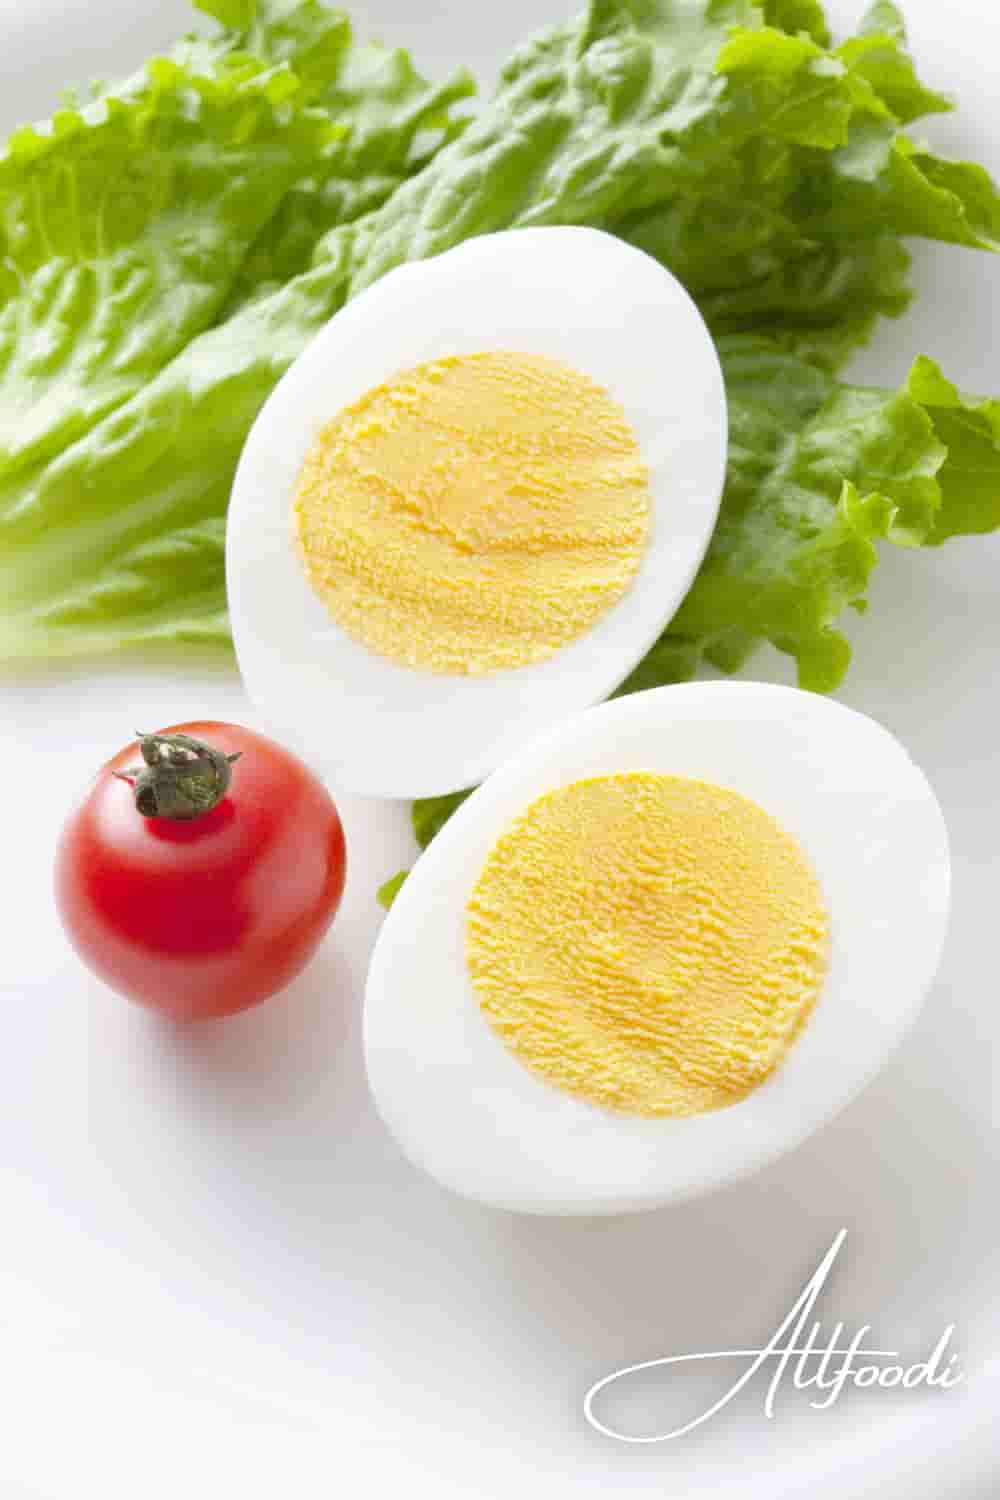 3 method for hard boiled eggs easy to peel-min